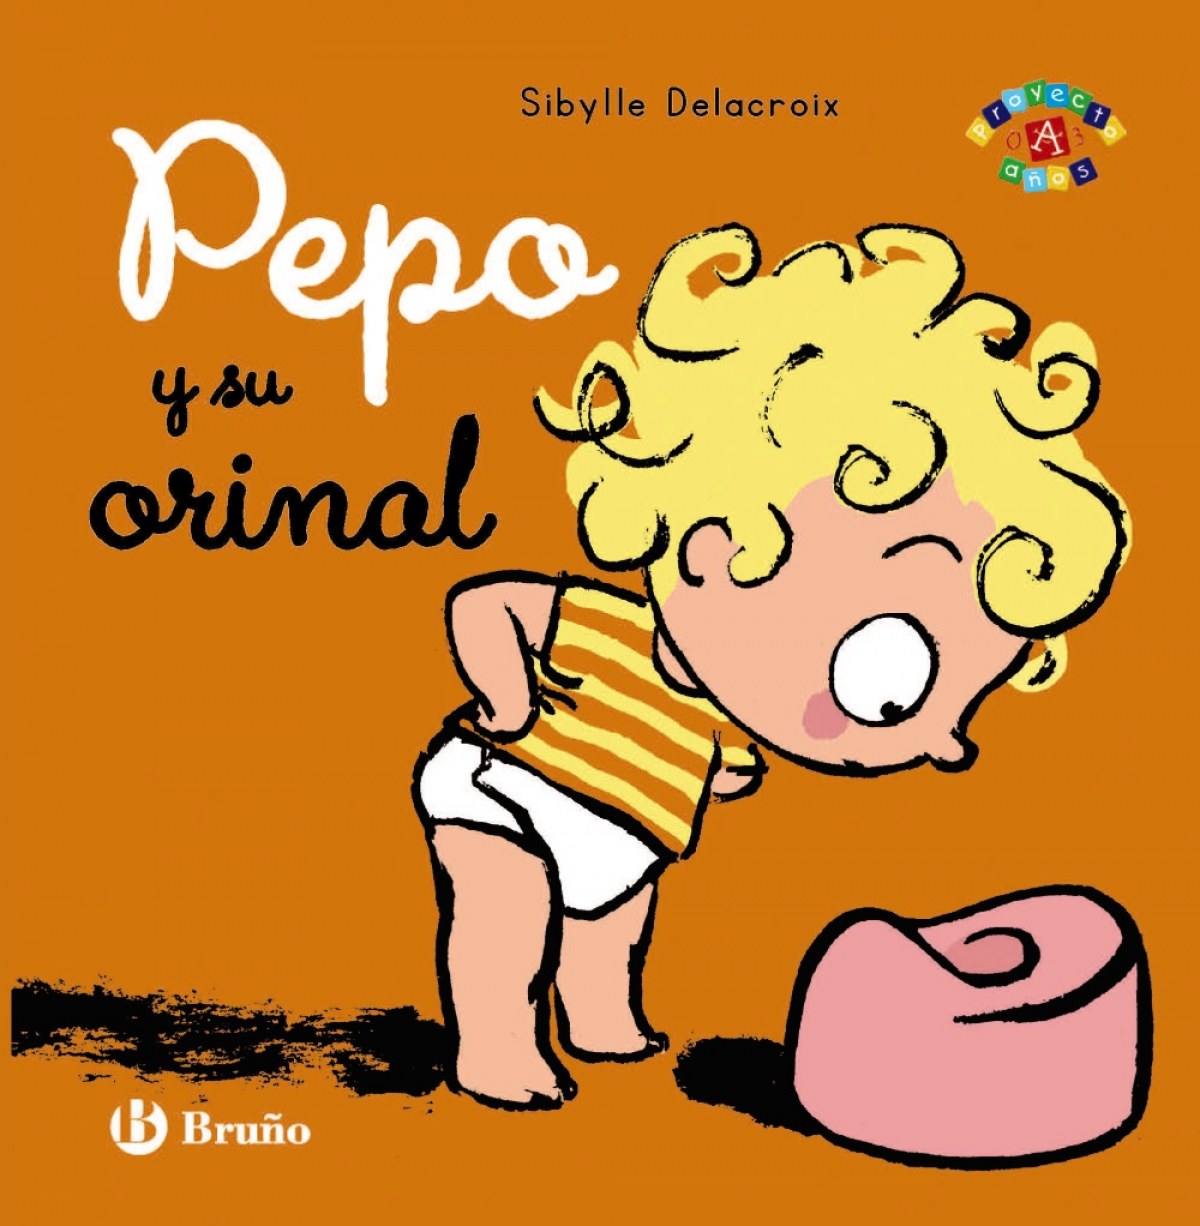 Pepo y su orinal Proyecto de 0 a 3 años - Delacroix, Sibylle